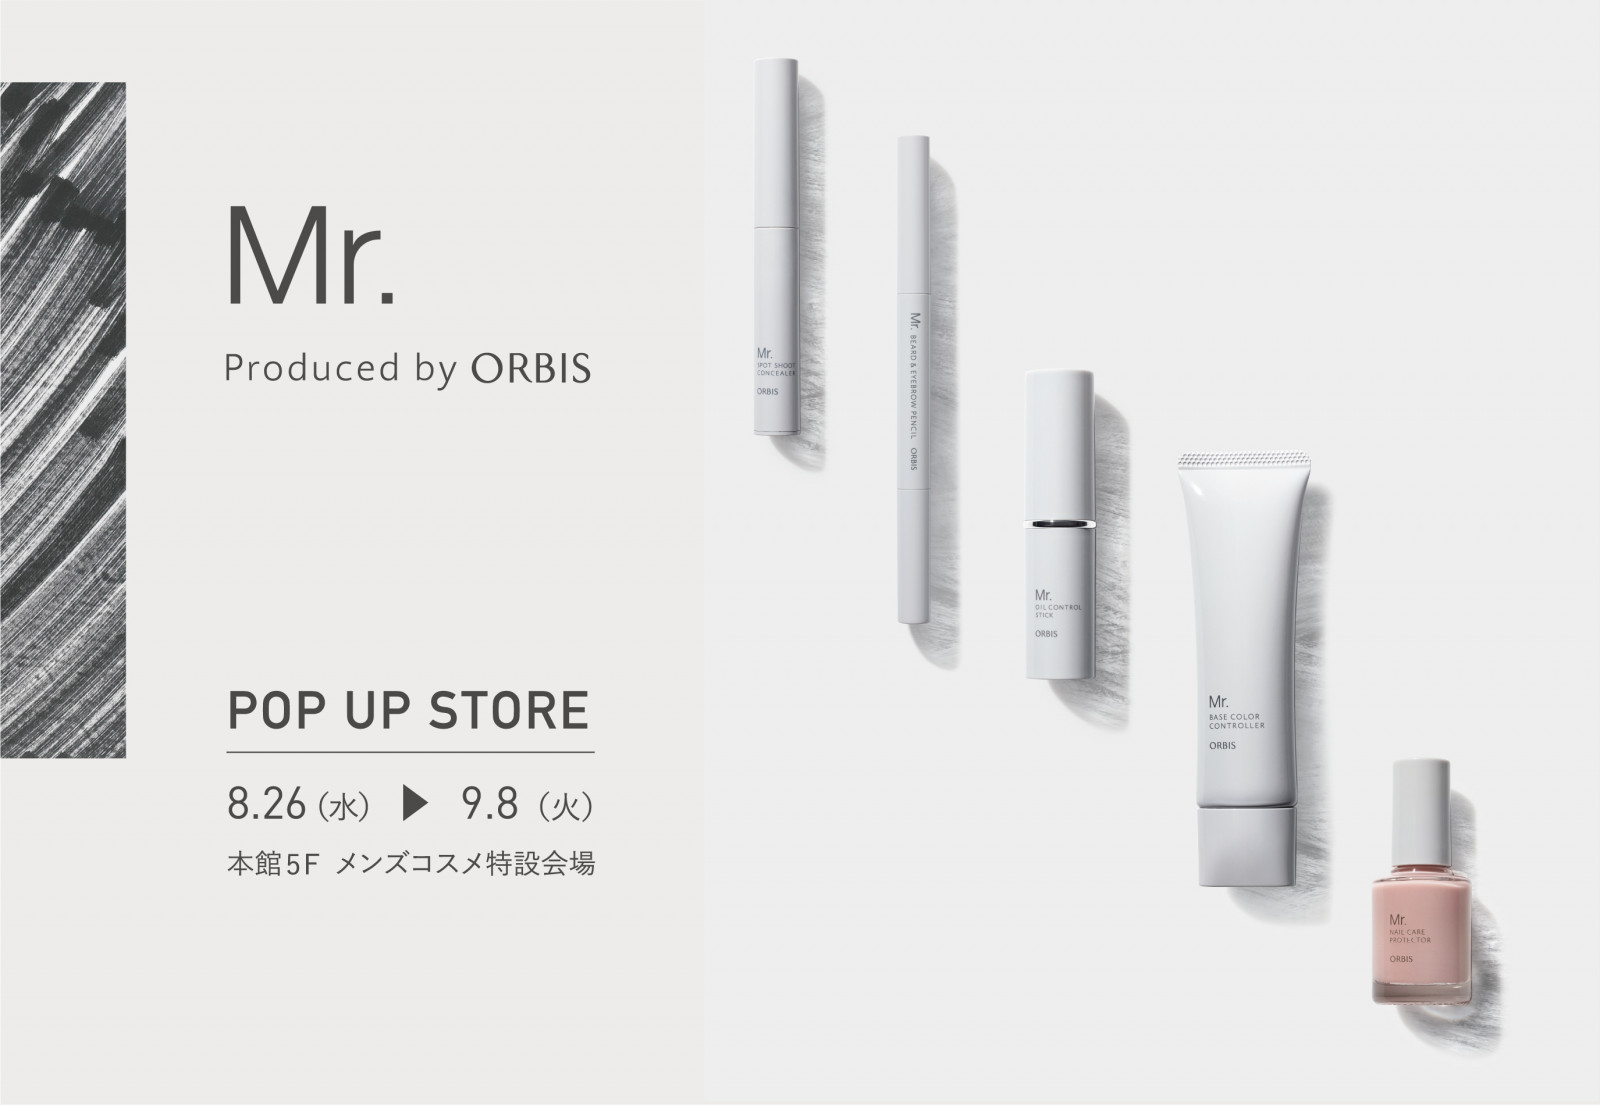 オルビスメンズブランド Mr Produced By Orbis が 銀座三越メンズコスメ Pop Upイベントに出店 Beauty Fashion Headline